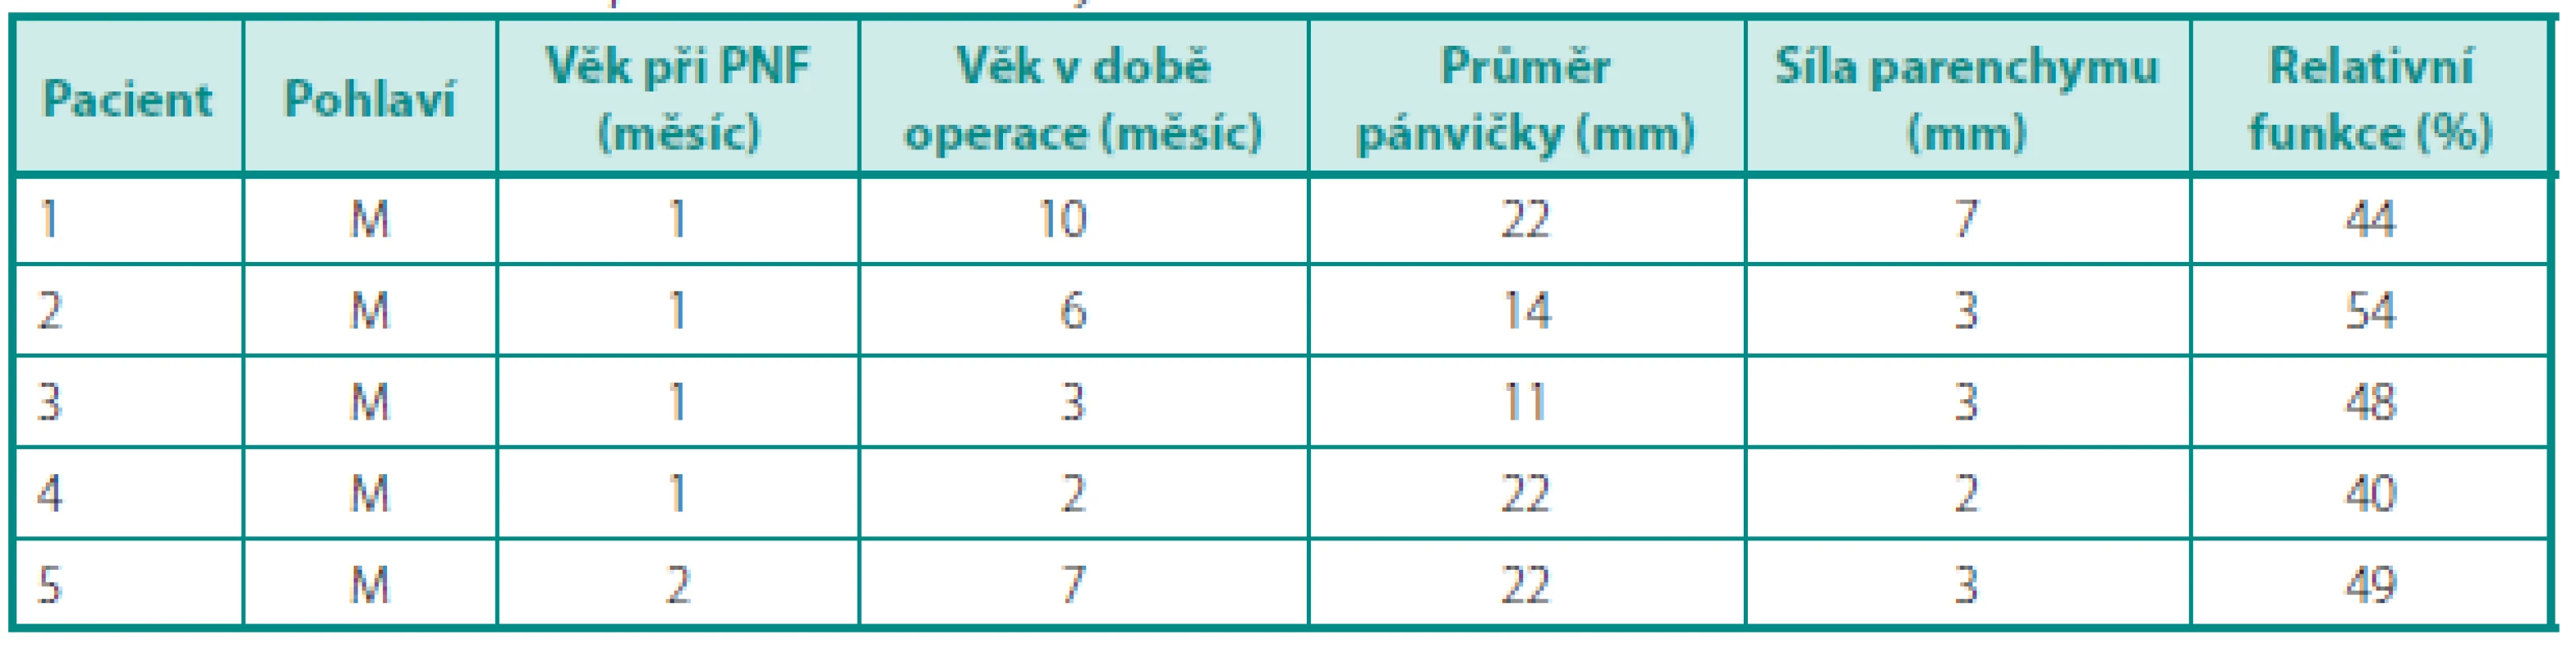 Charakteristiky pacientů s prodělanou APN
Table 1. Characteristics of patients with a history of APN